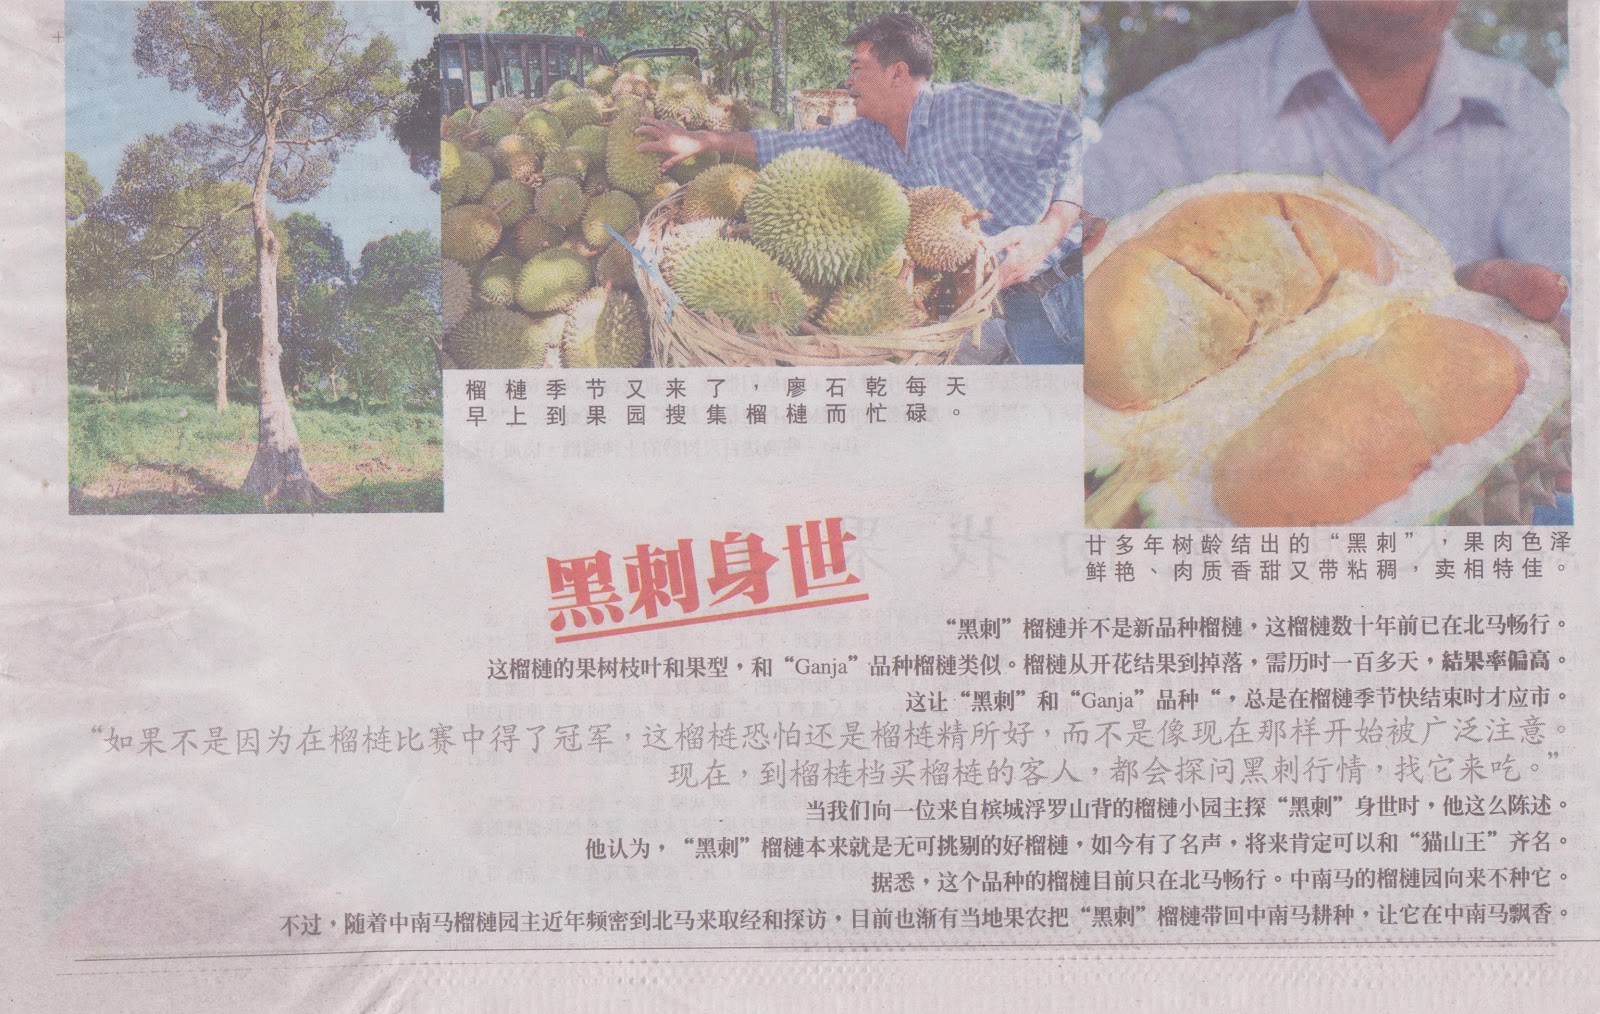 ... 2012 Penang durian champion - 黑刺 Duri Hitam , Blackthorn durian